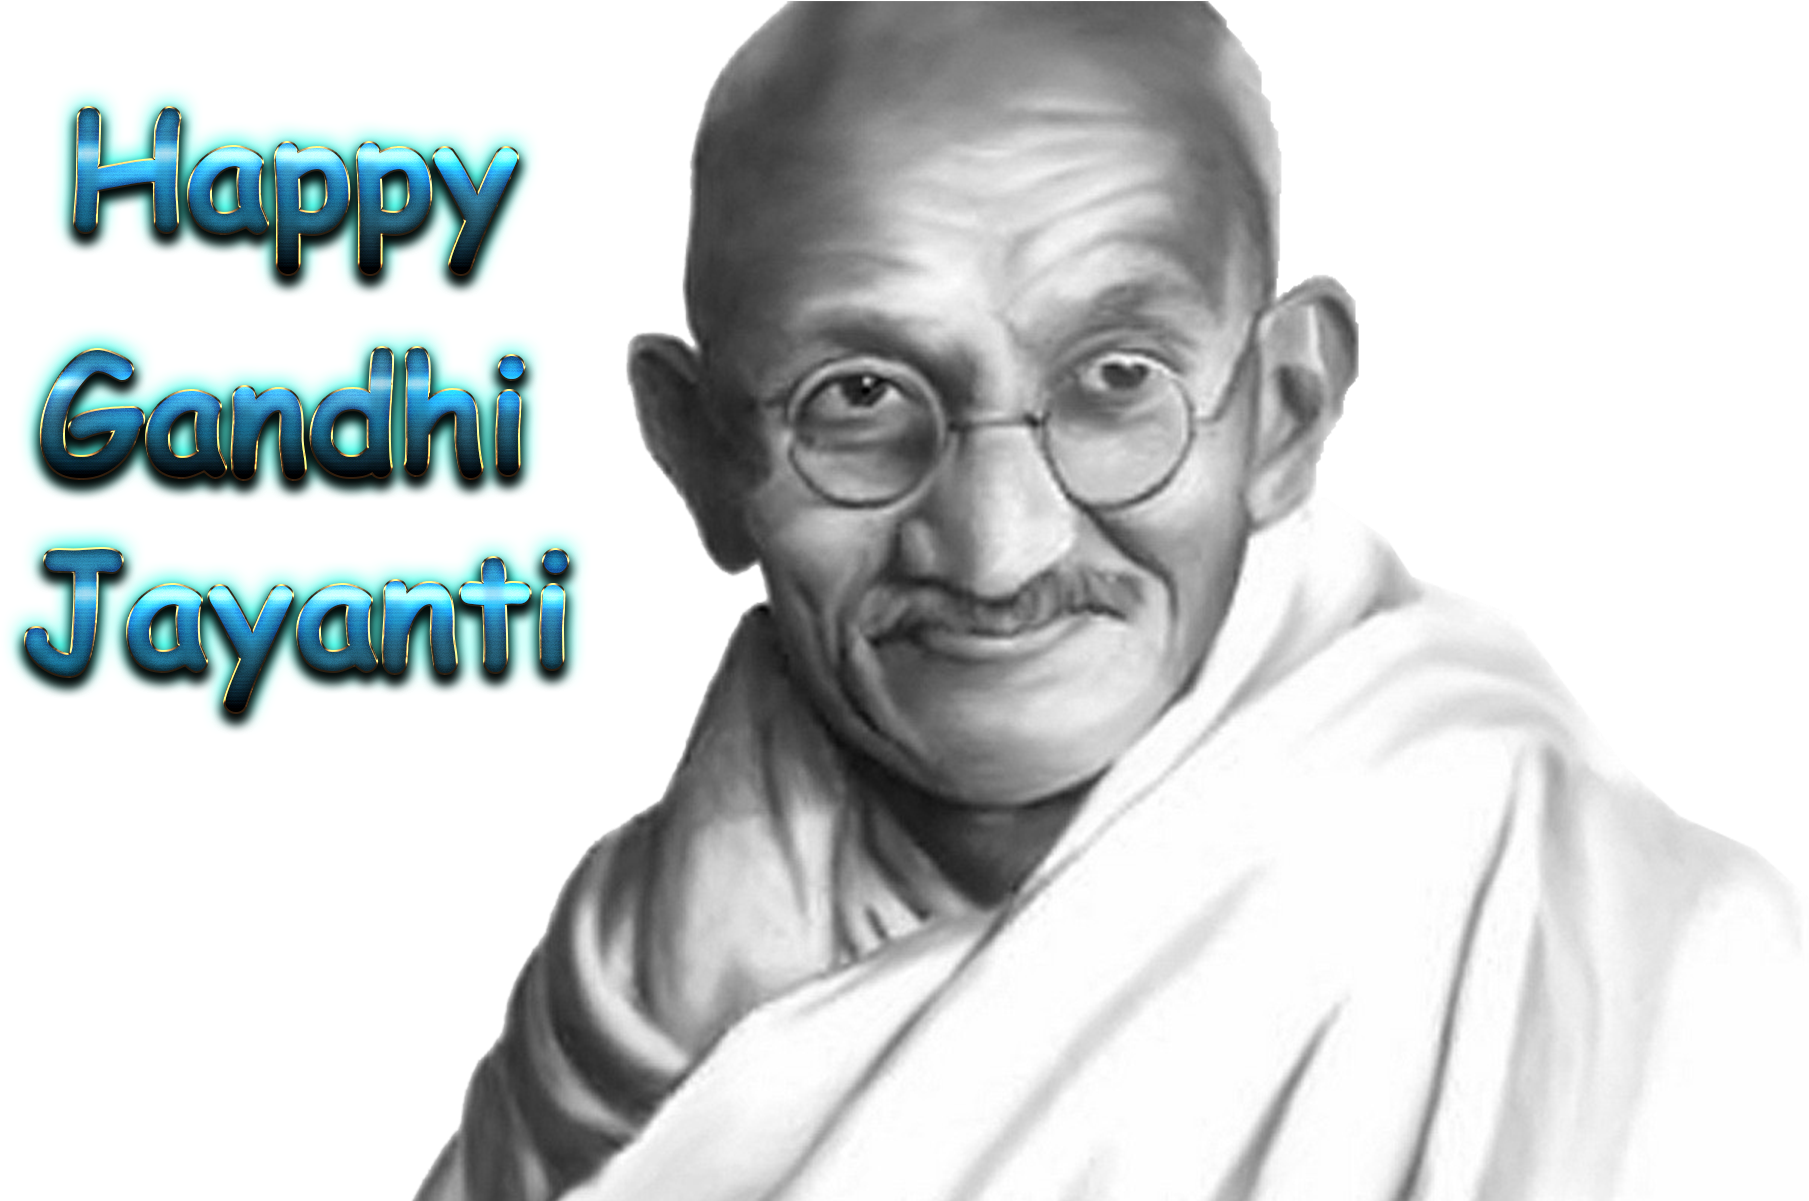 Happy Gandhi Jayanti Celebration